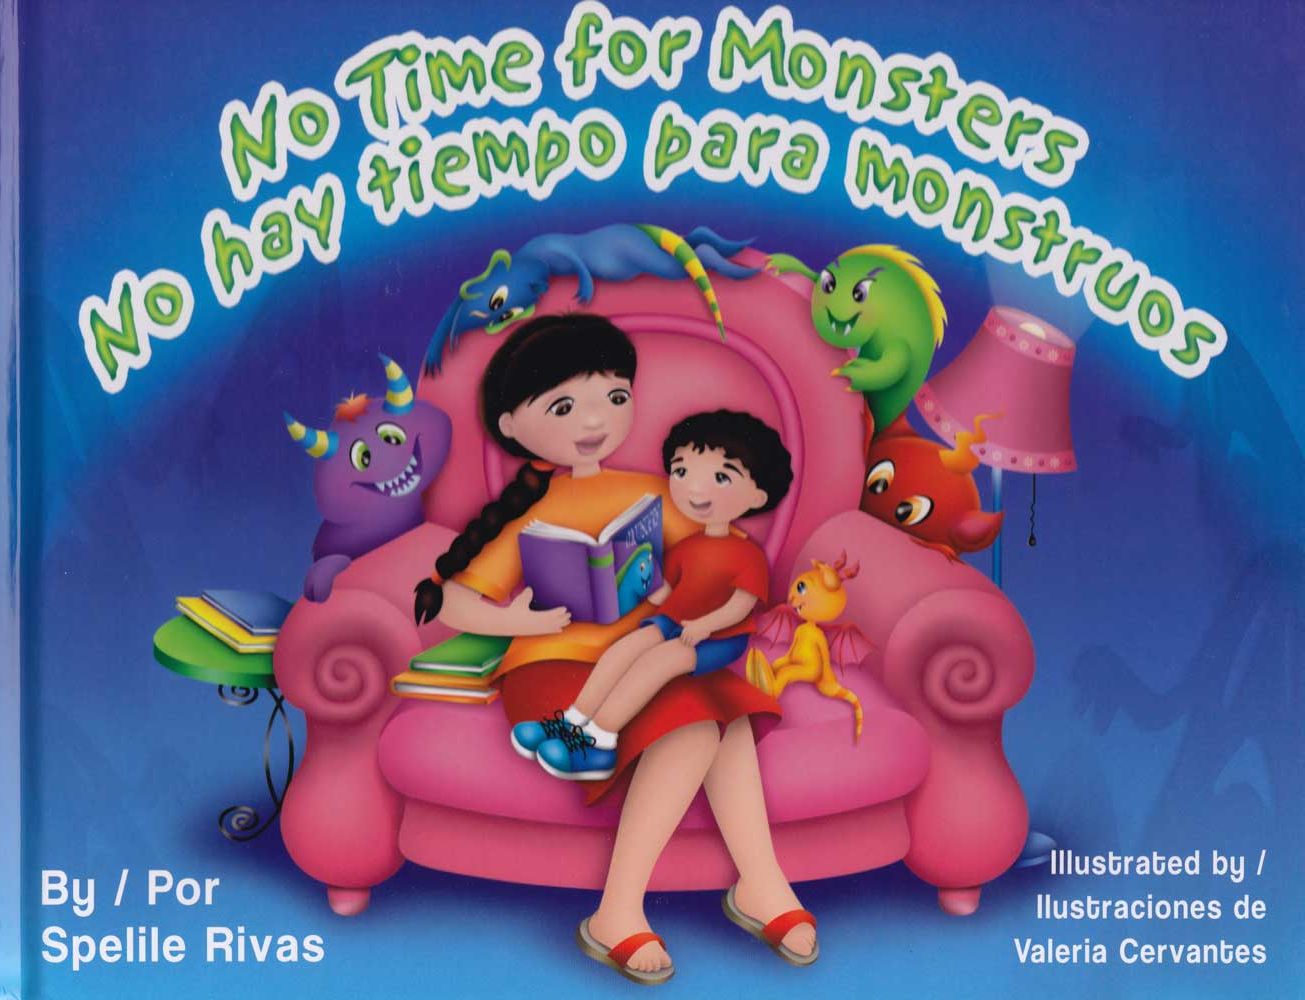 No hay tiempo para monstruos - No Time for Monsters, Del Sol Books